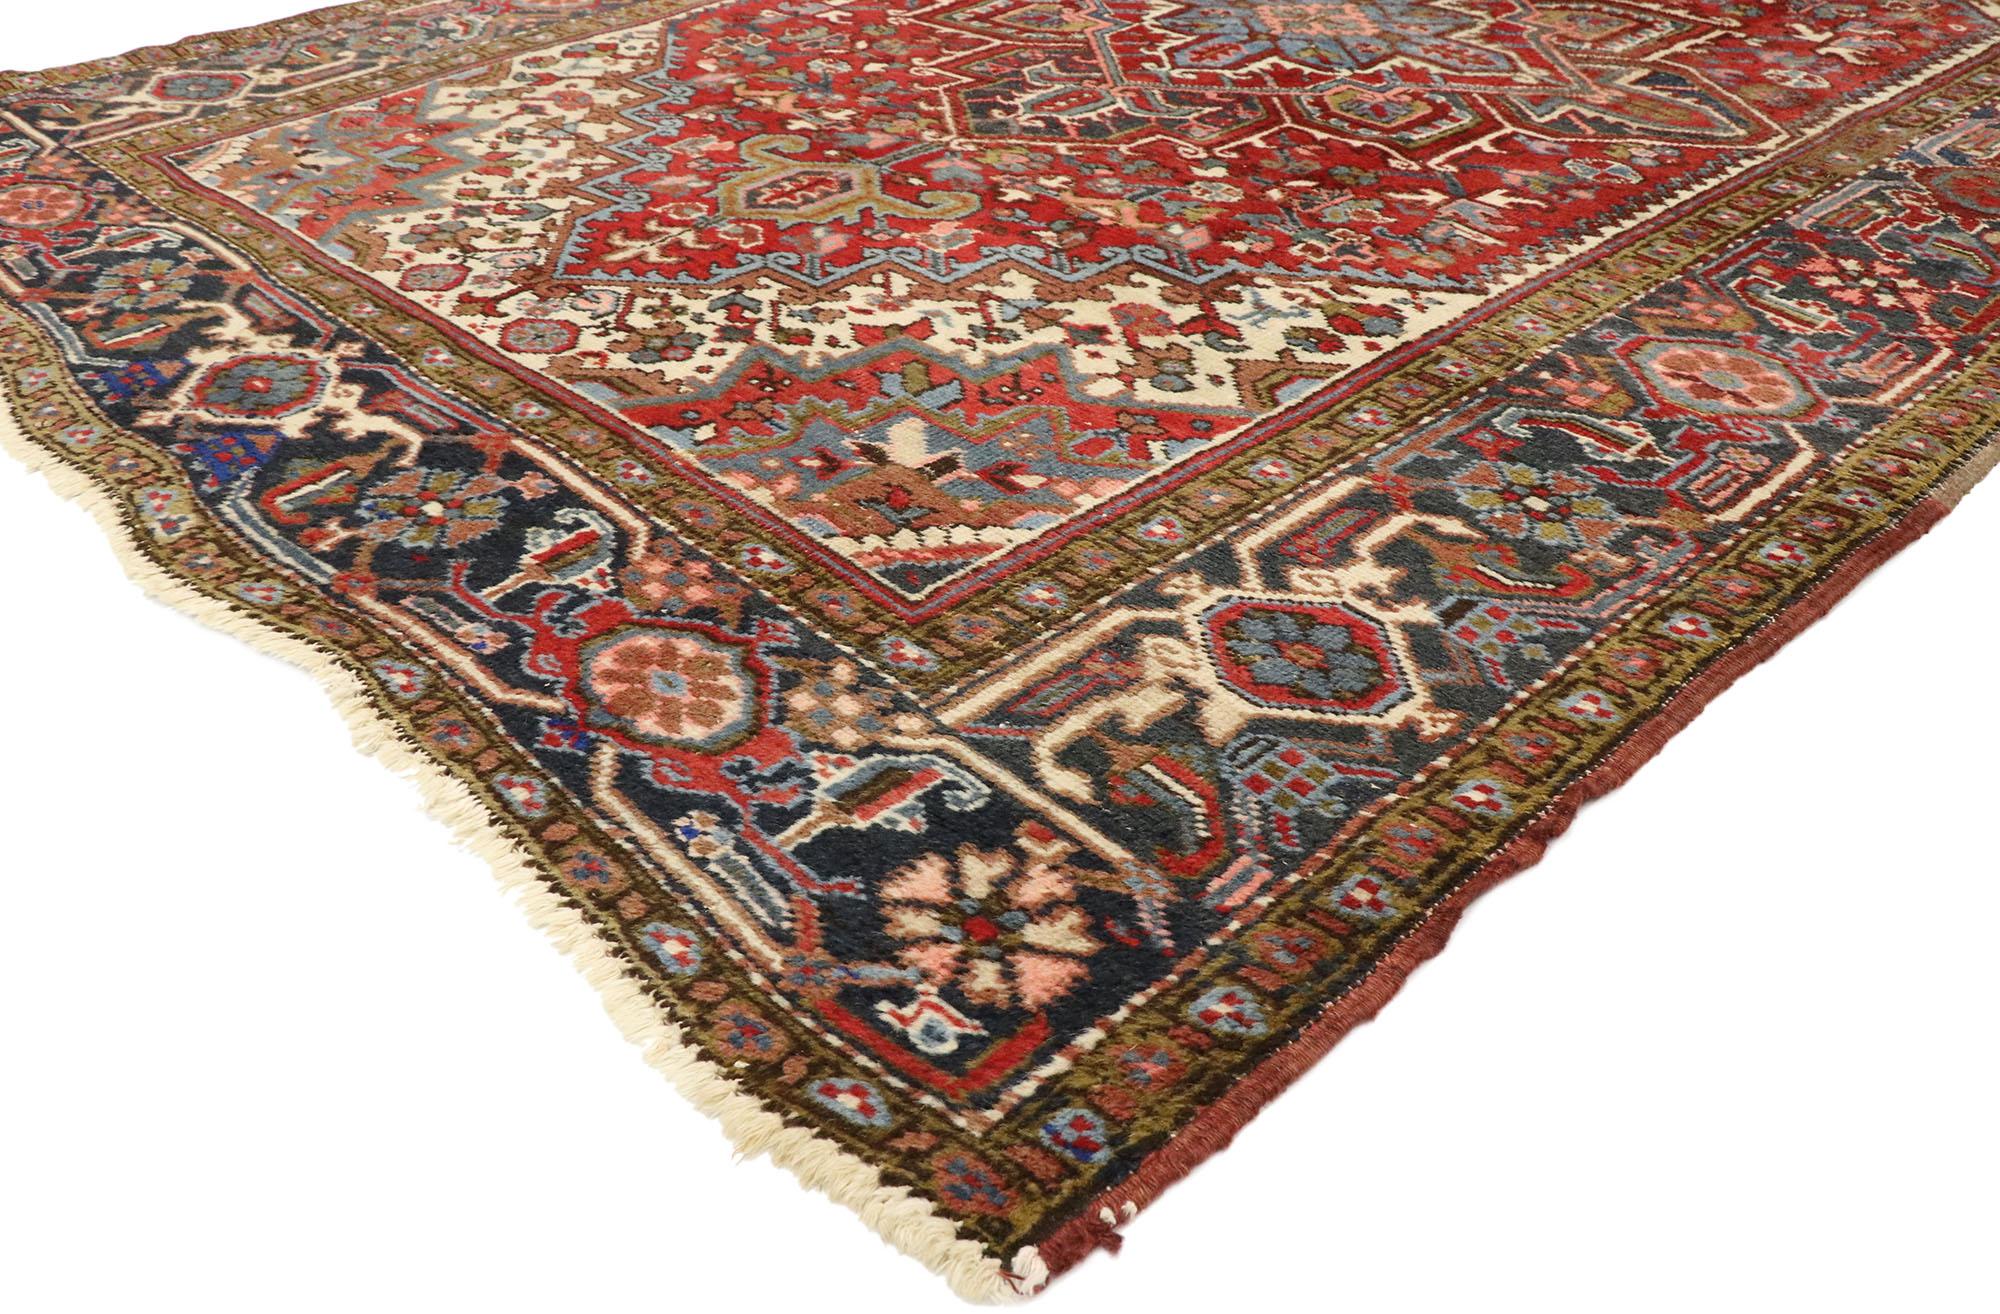 77456 tapis persan antique Heriz de style moderne fédéral. Avec son attrait intemporel, ses couleurs raffinées et ses éléments architecturaux, ce tapis persan Heriz ancien en laine nouée à la main peut s'intégrer parfaitement aux intérieurs